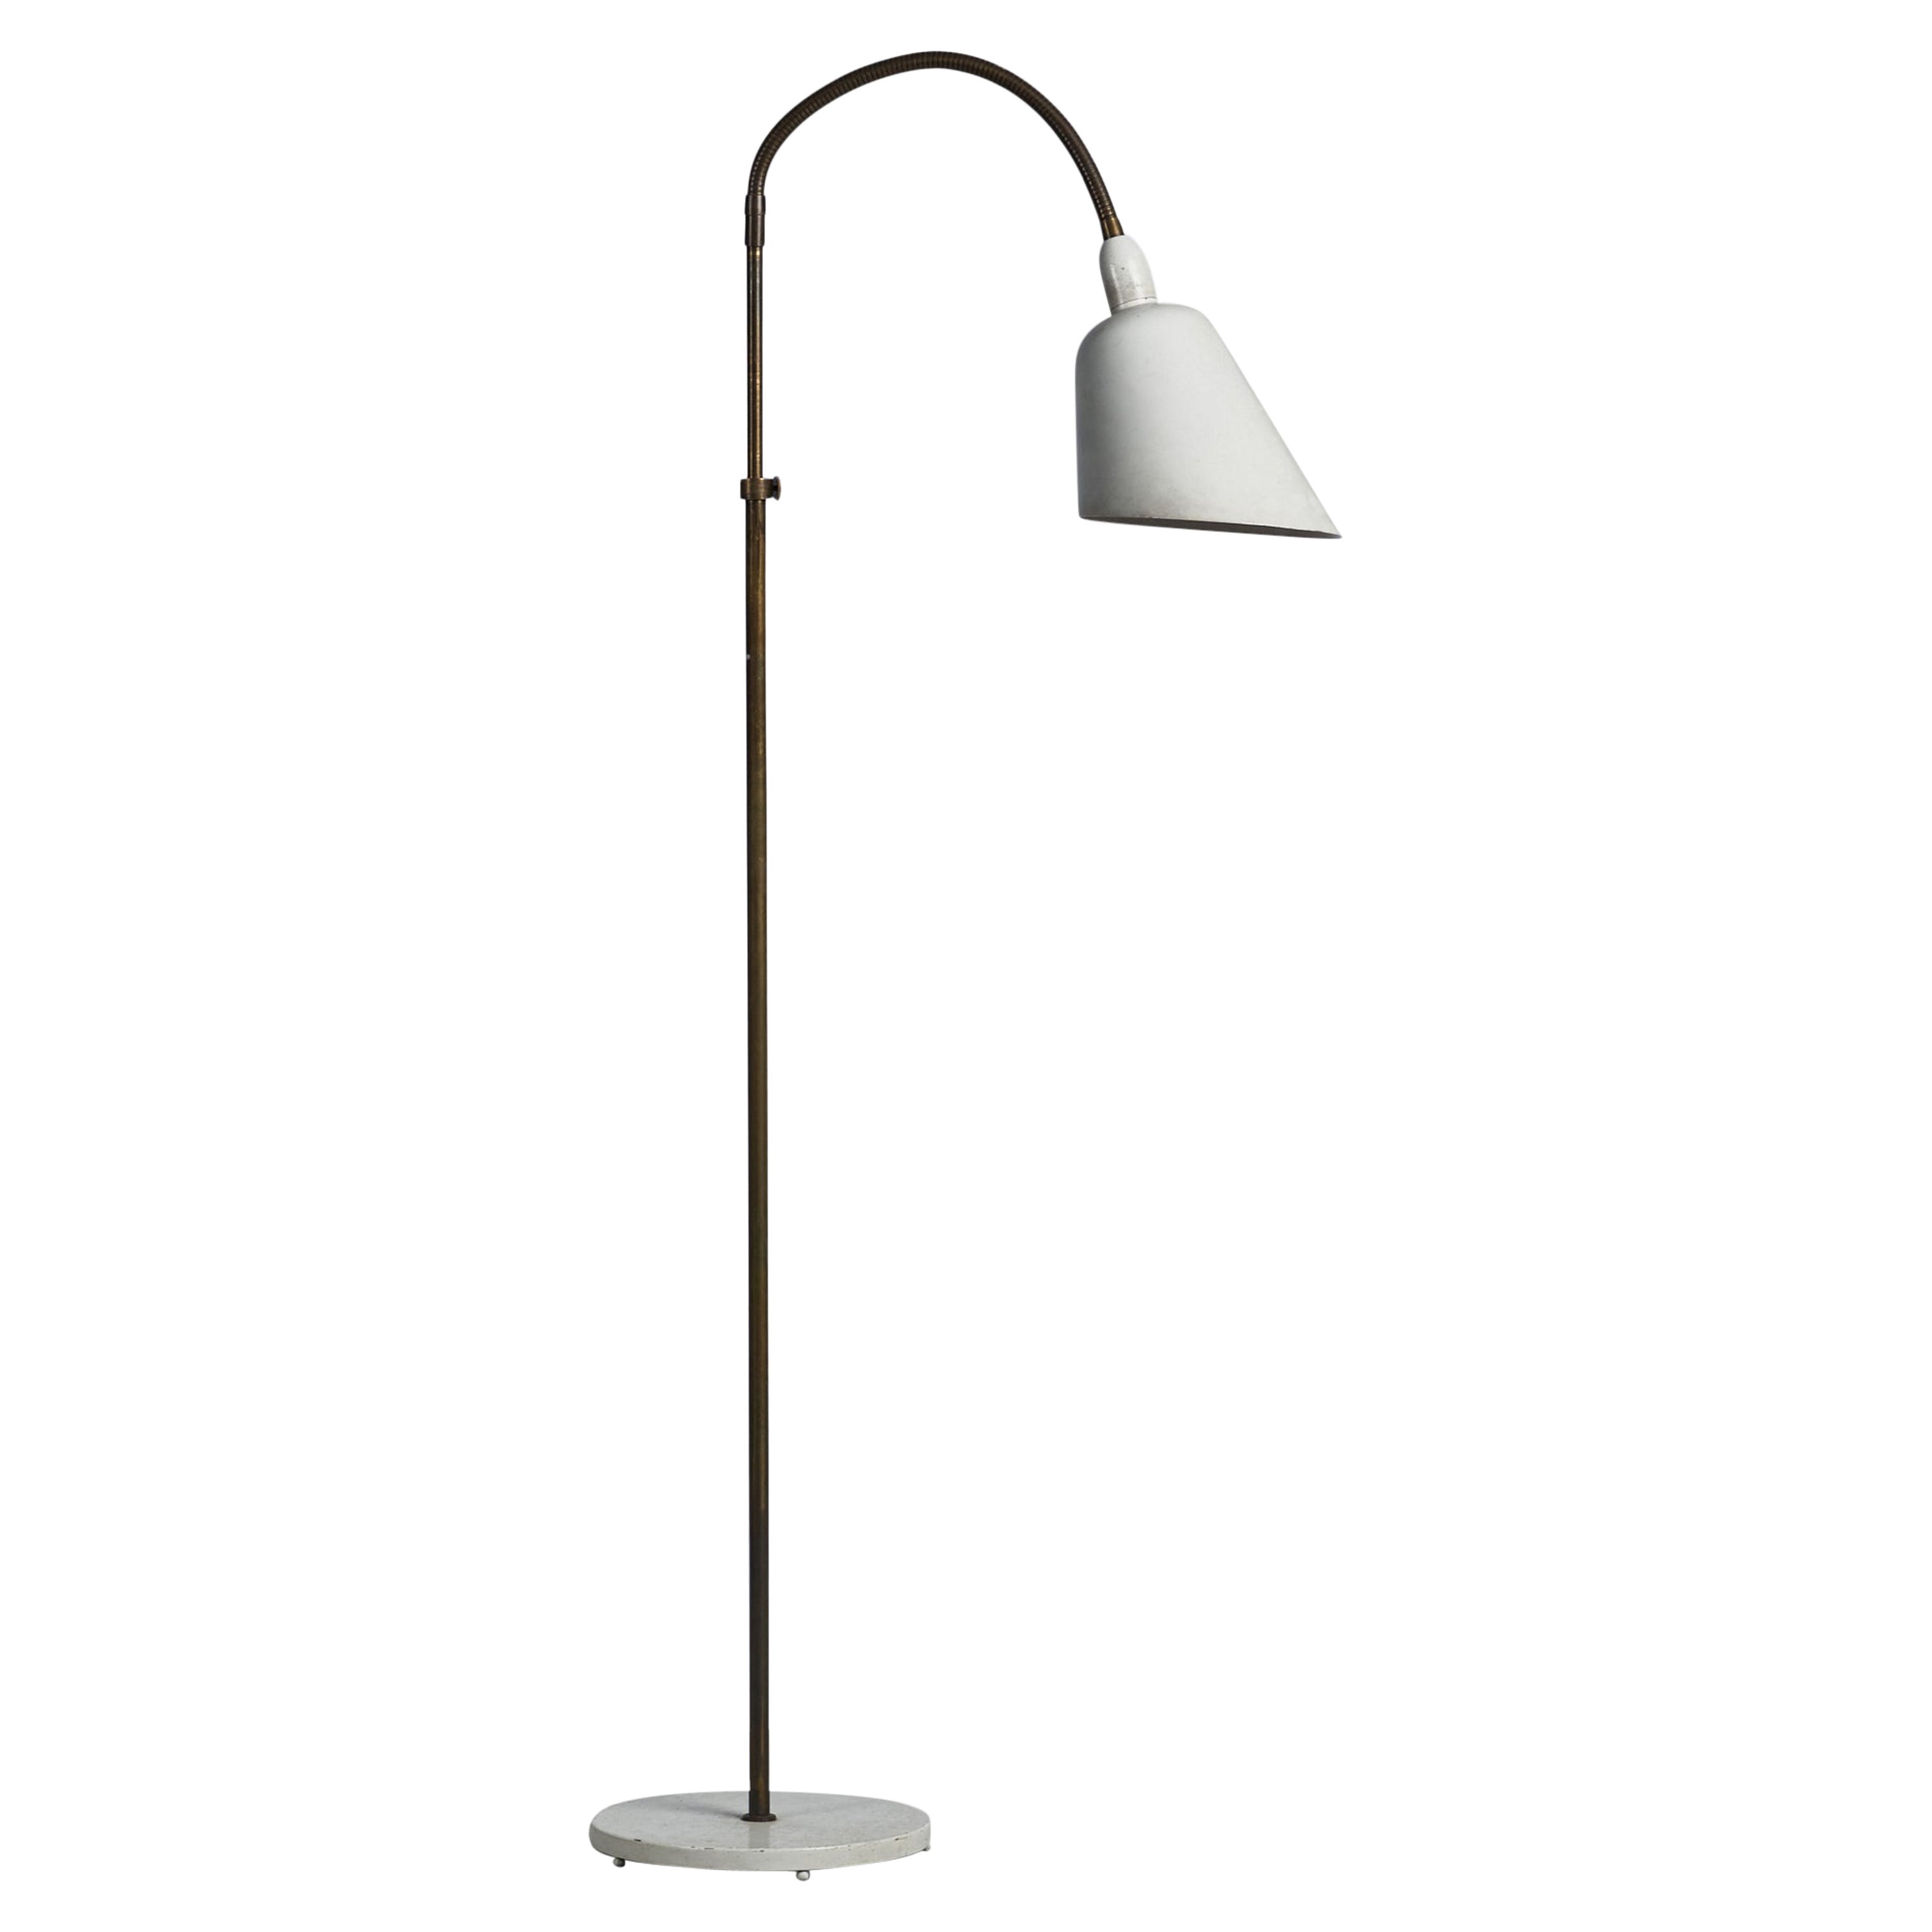 Arne Jacobsen, lampadaire, laiton, métal, Danemark, années 1930